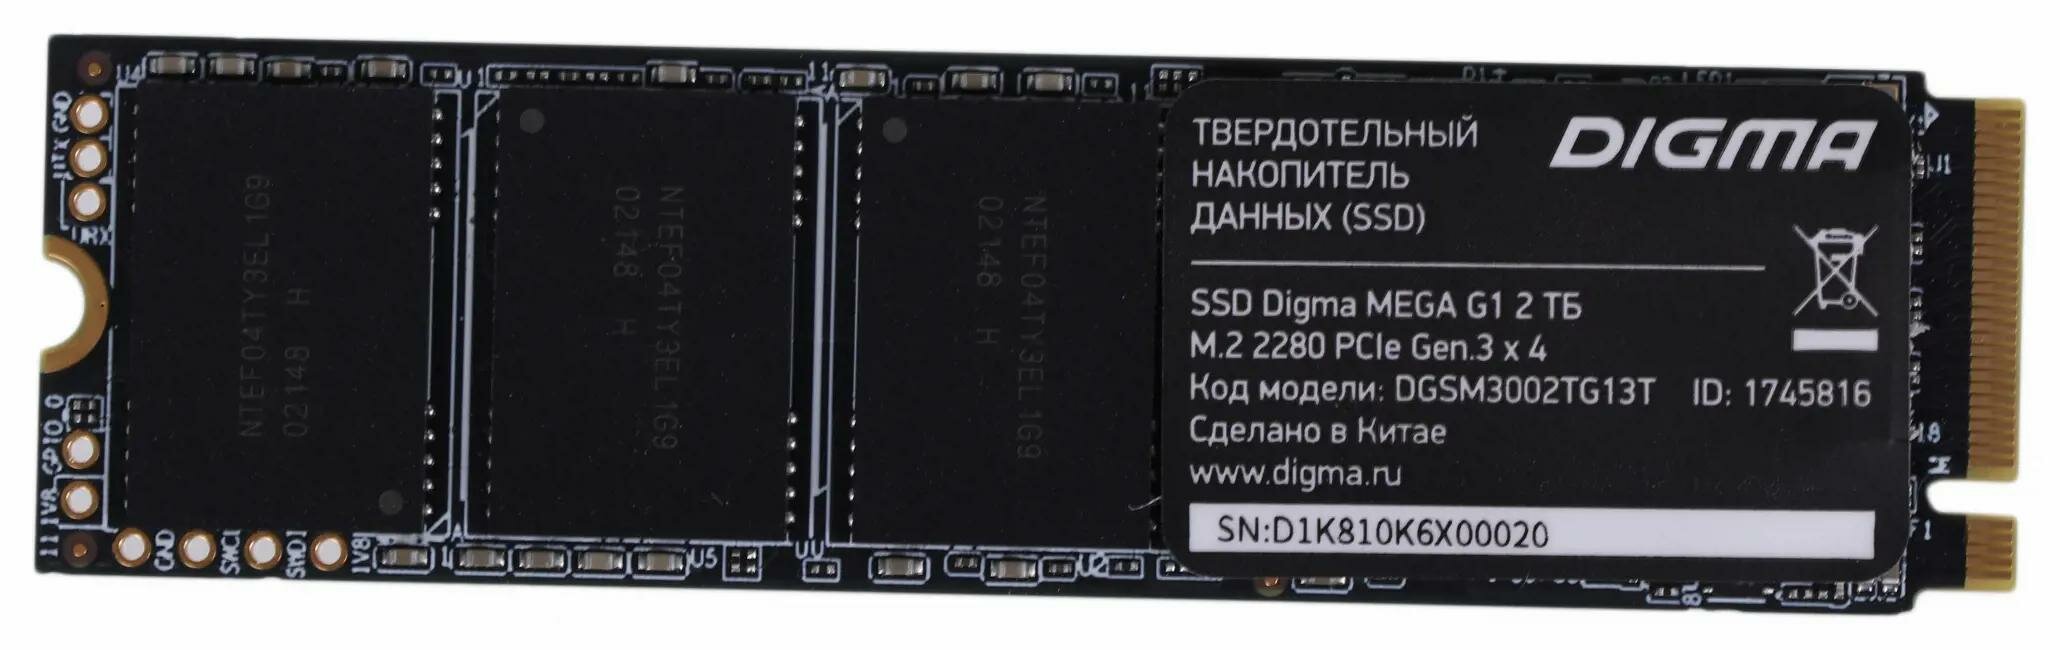 Внутренний накопитель SSD Digma DGSM3002TG13T 2Tb